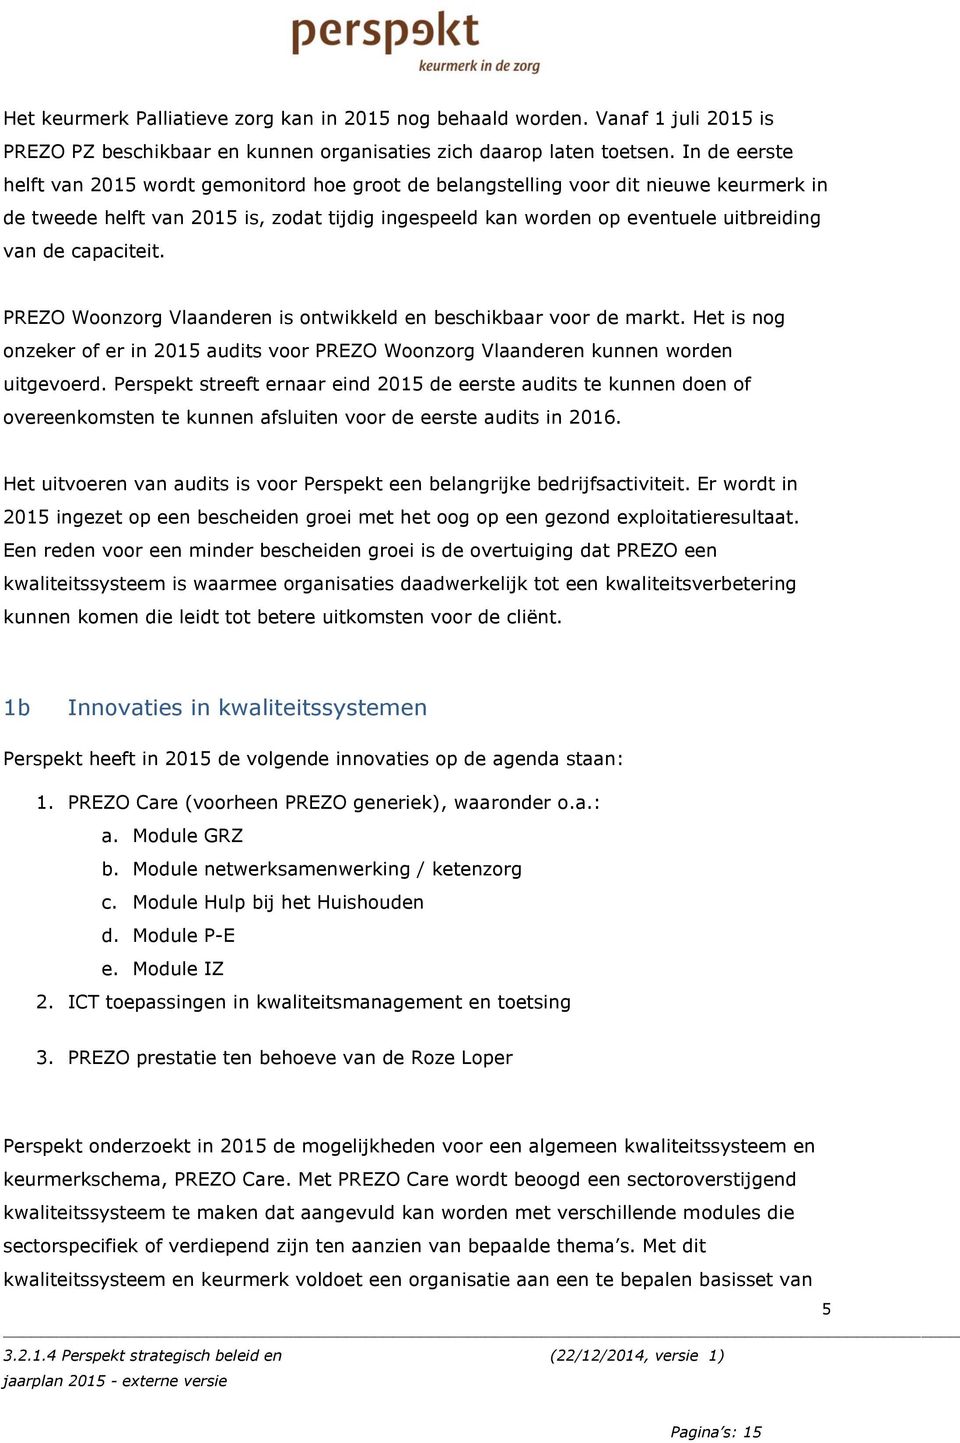 capaciteit. PREZO Woonzorg Vlaanderen is ontwikkeld en beschikbaar voor de markt. Het is nog onzeker of er in 2015 audits voor PREZO Woonzorg Vlaanderen kunnen worden uitgevoerd.